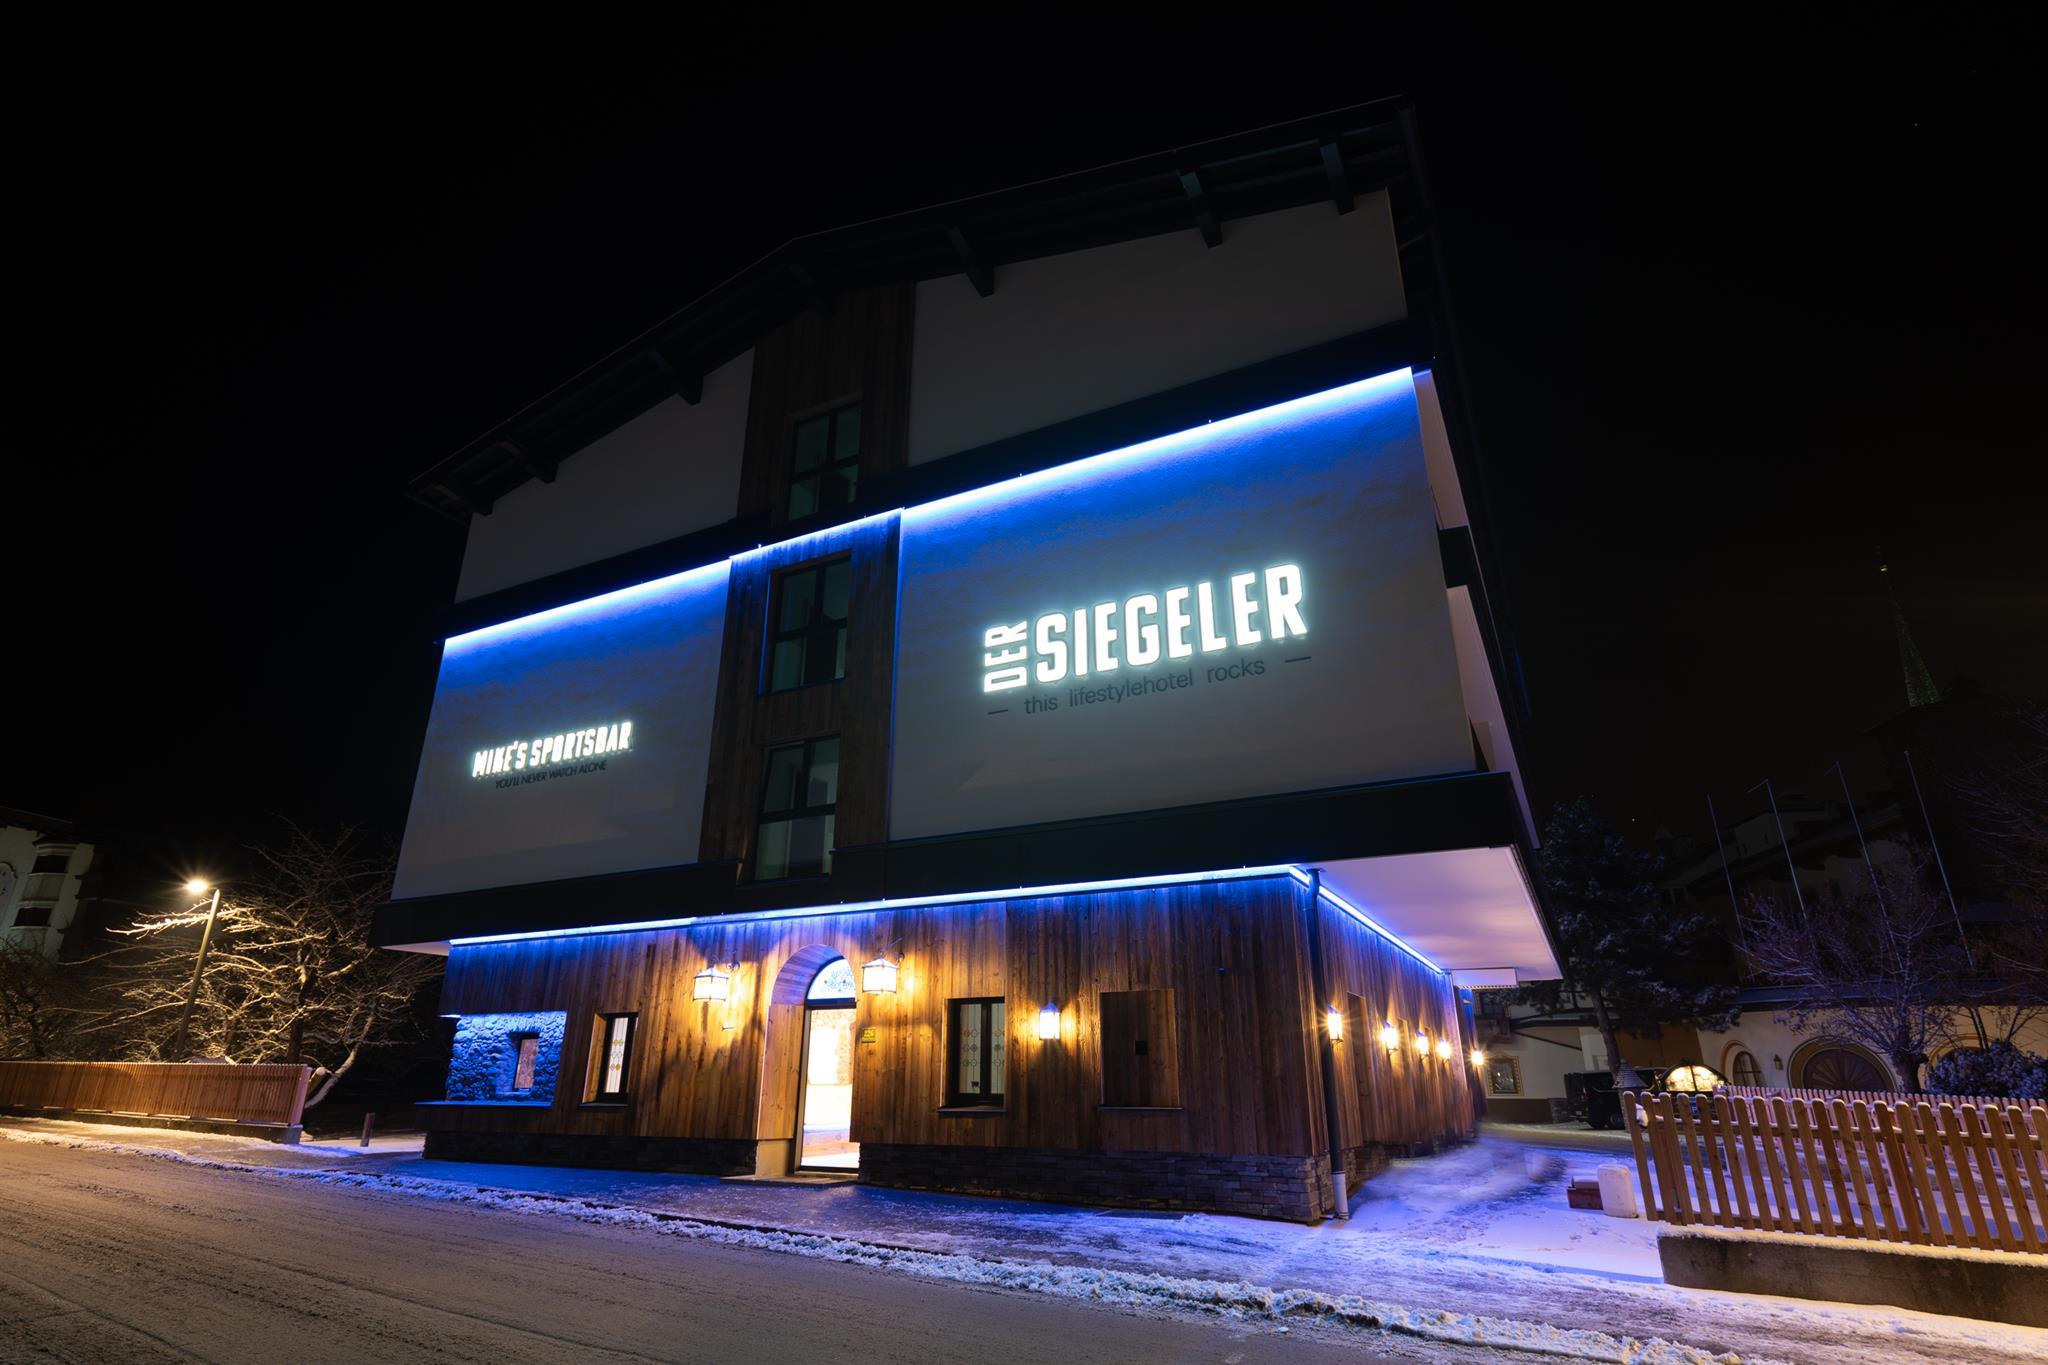 Der Siegeler -this lifestylehotel rocks-